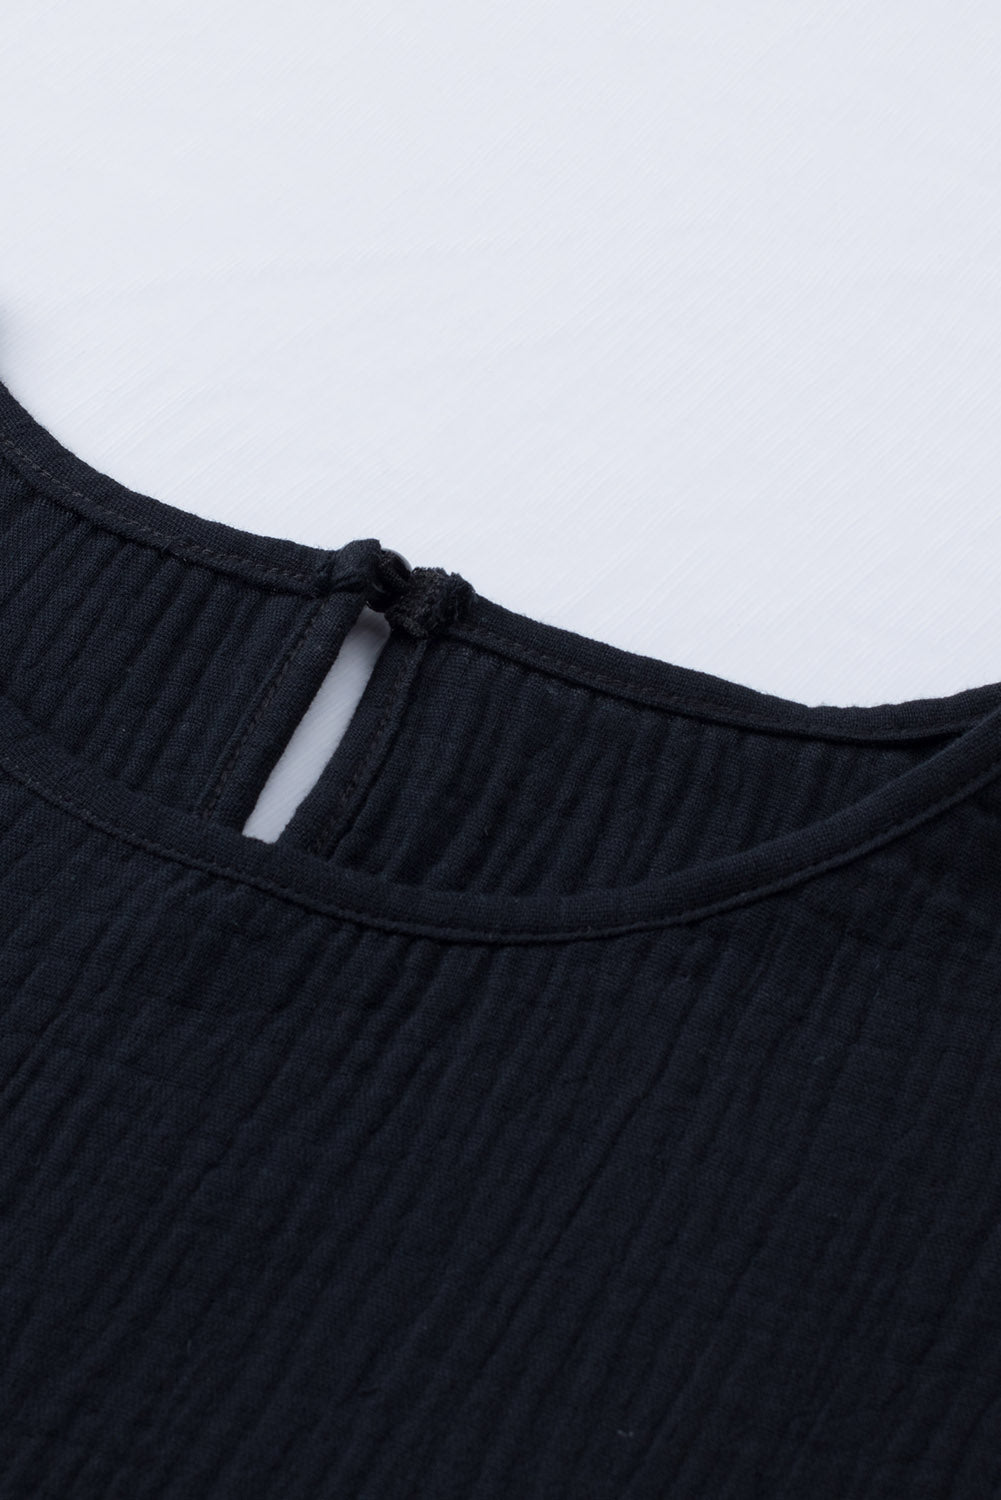 Crna teksturirana bluza kratkih rukava s volanima